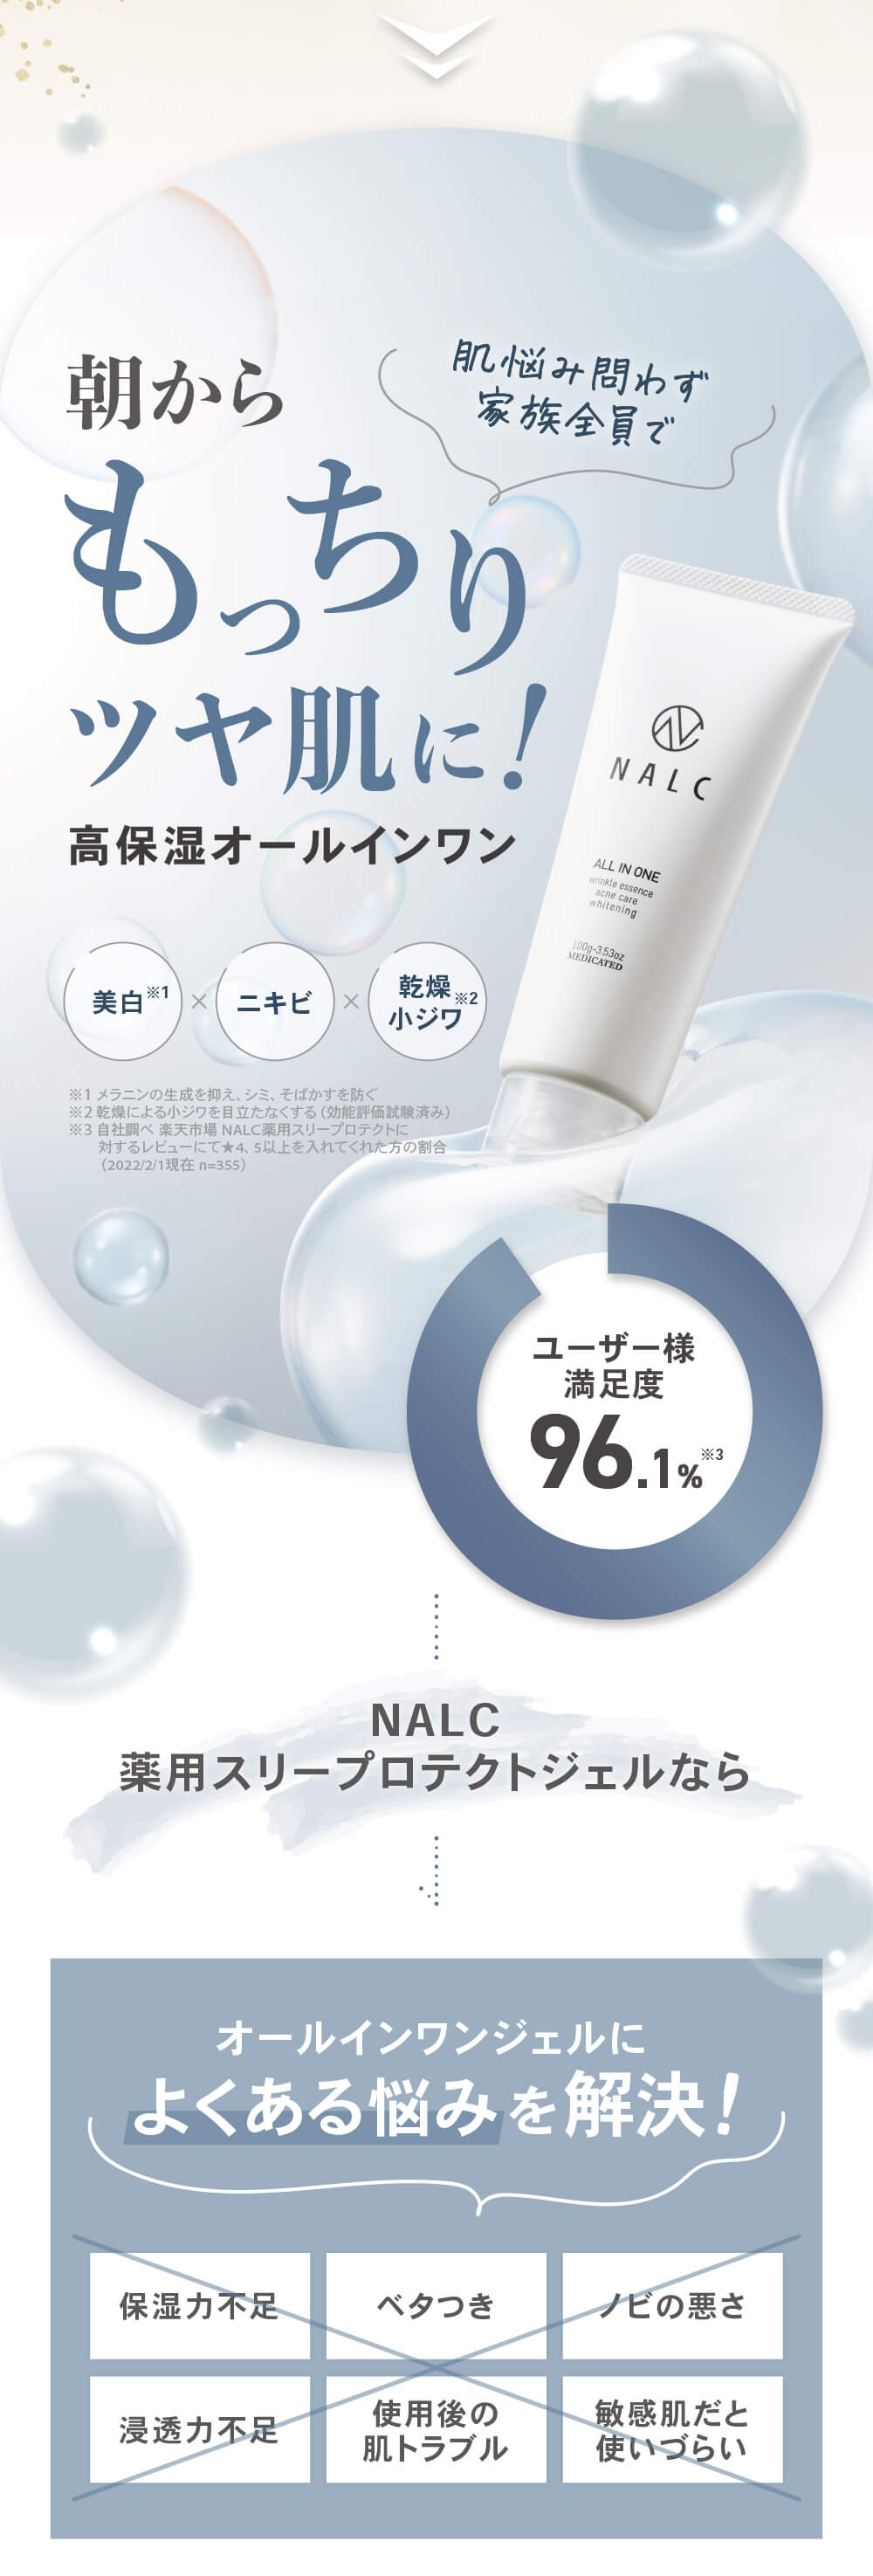 NALC 薬用スリープロテクトジェル 100g